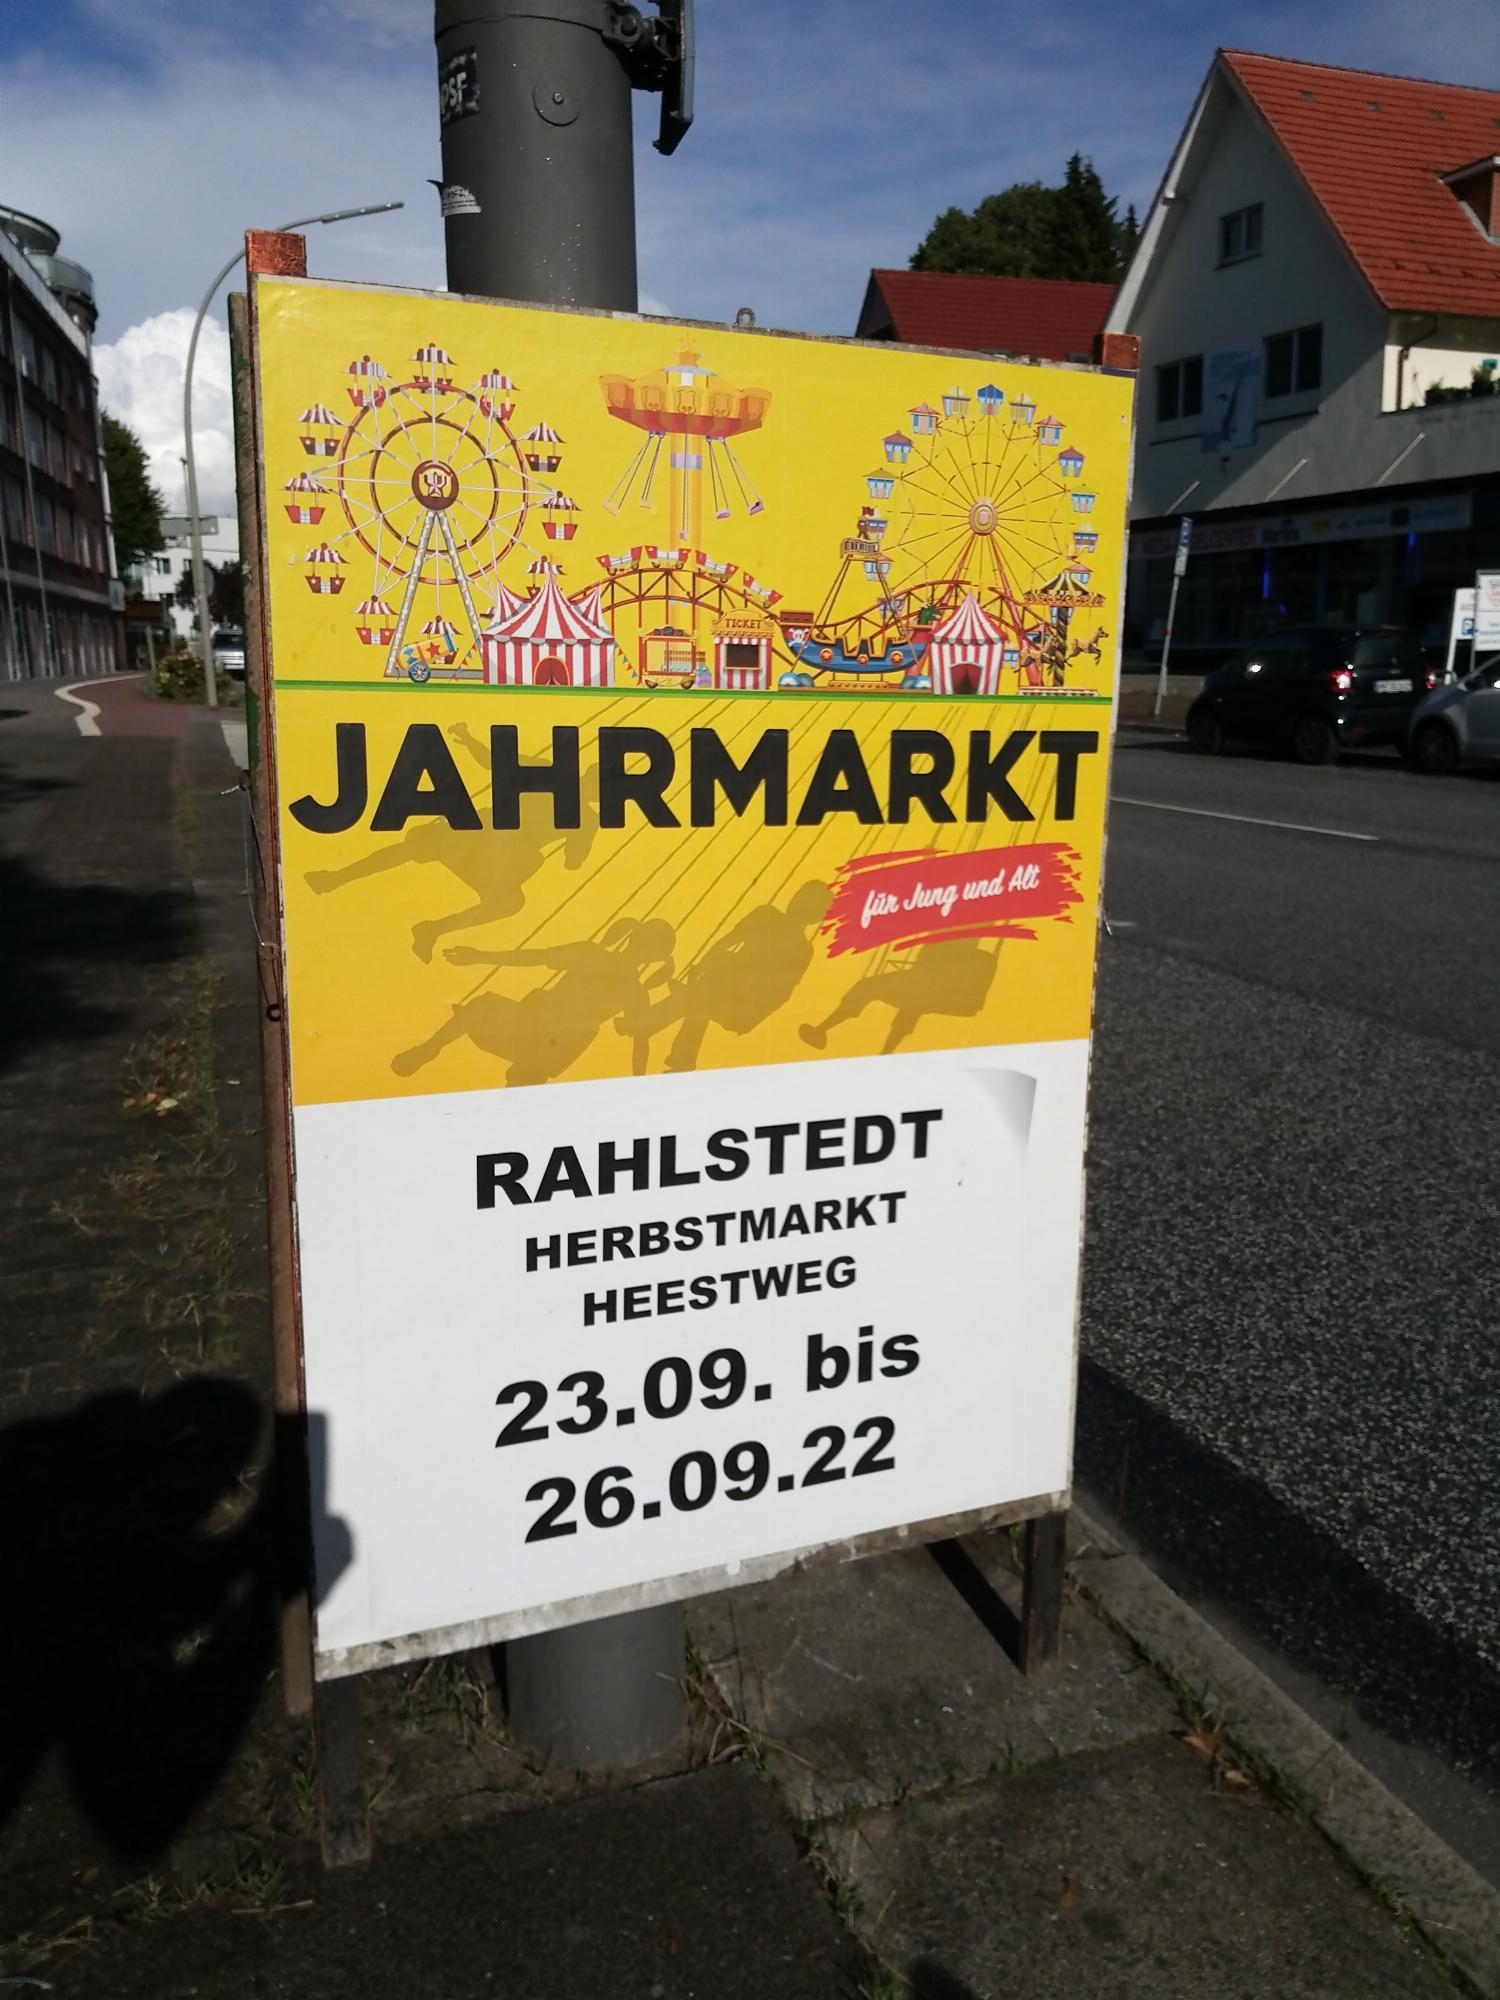 Jahrmarkt Rahlstedter Herbstmarkt 23.-26.09.'22